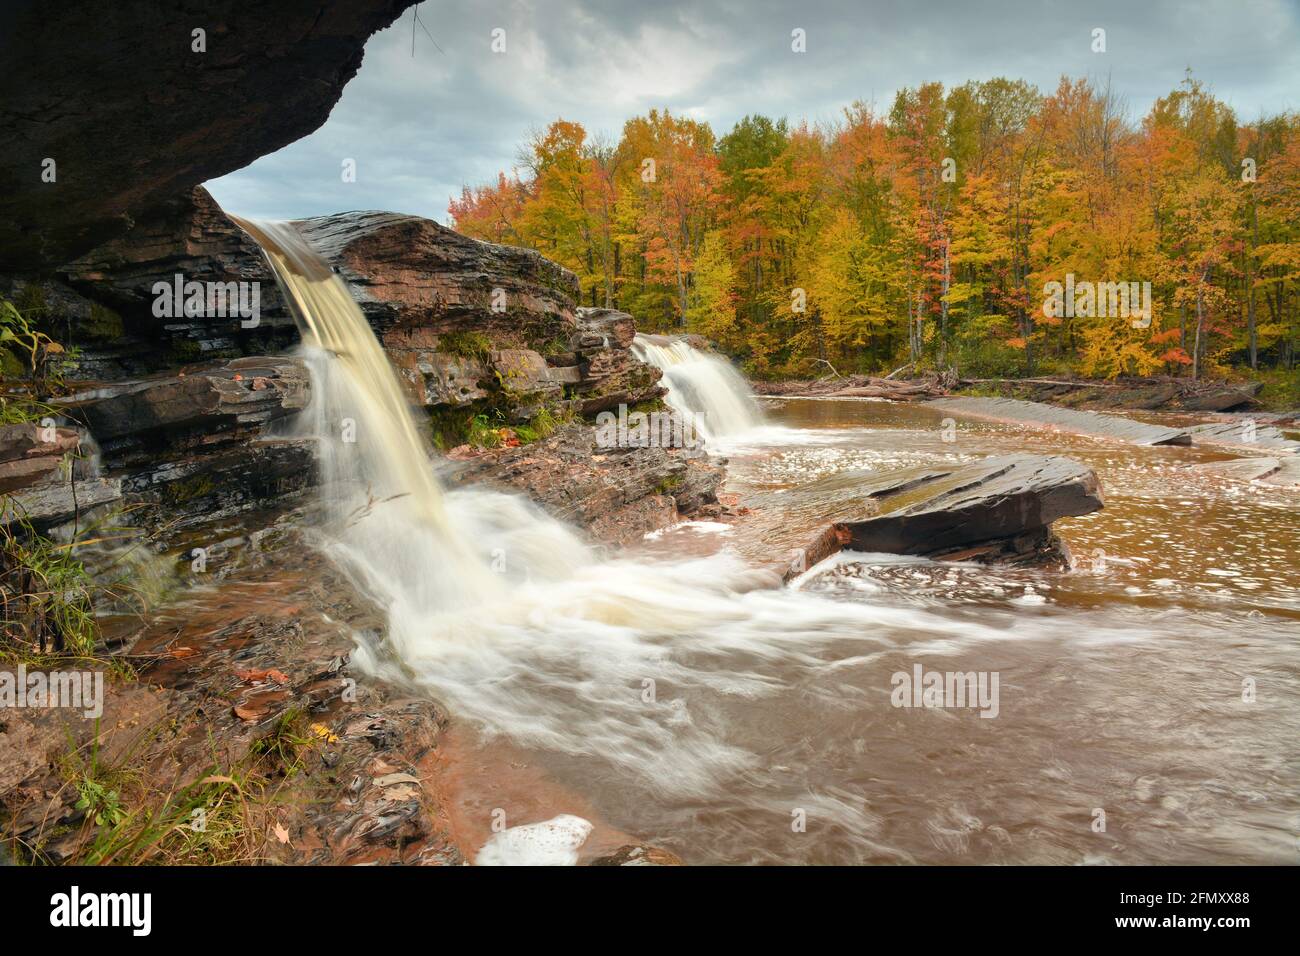 Una cascata invia sillose ruscelli a valle contro uno sfondo di boschi ricchi di colori autunnali Foto Stock